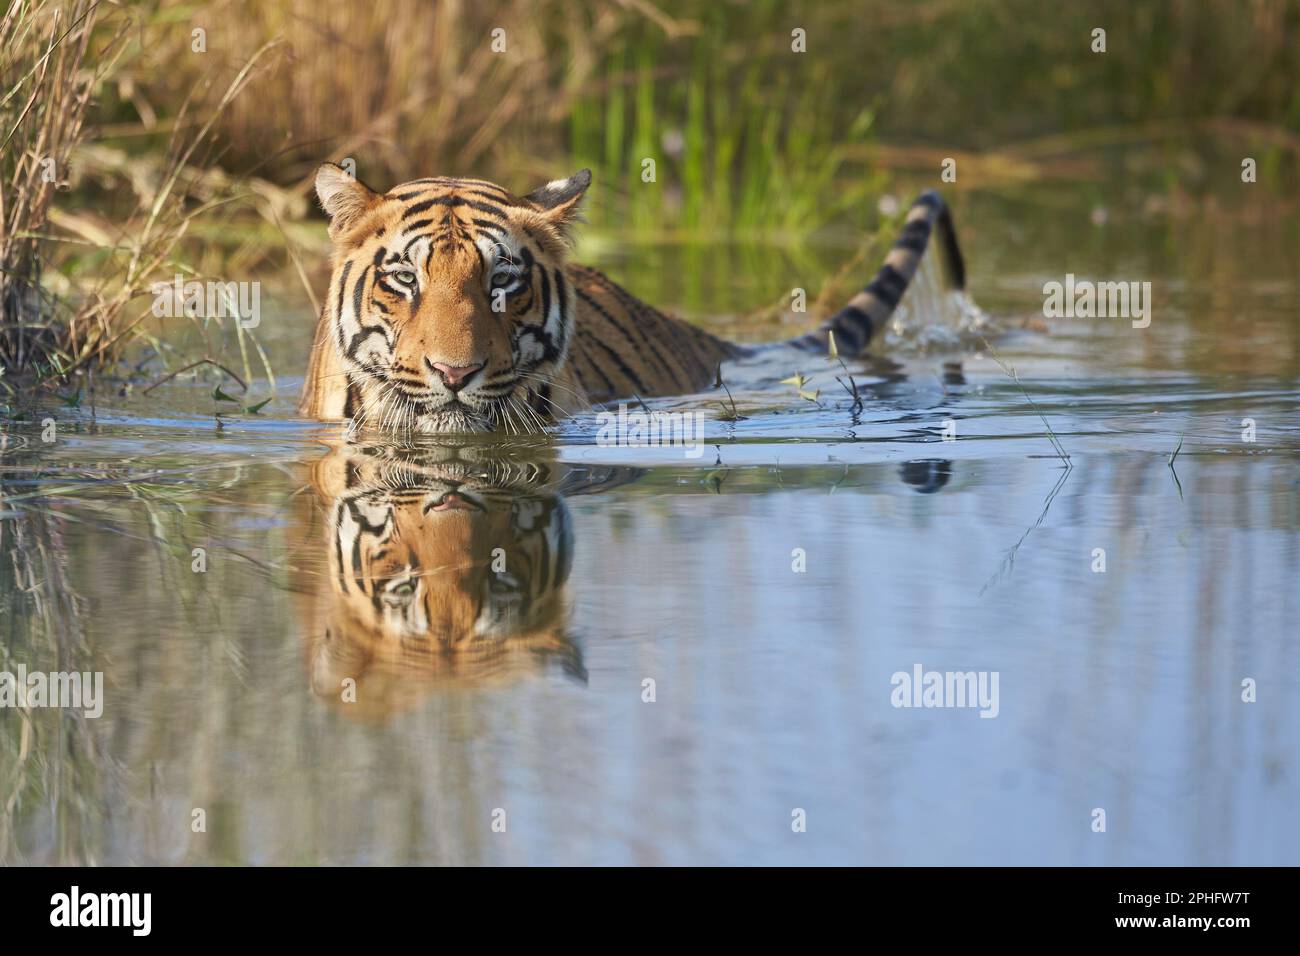 Un énorme tigre sauvage se rafraîchit dans un lac, à la réserve de tigres de Tadoba, en Inde. Les températures après la mousson peuvent encore atteindre 35 degrés celcius, et unli Banque D'Images